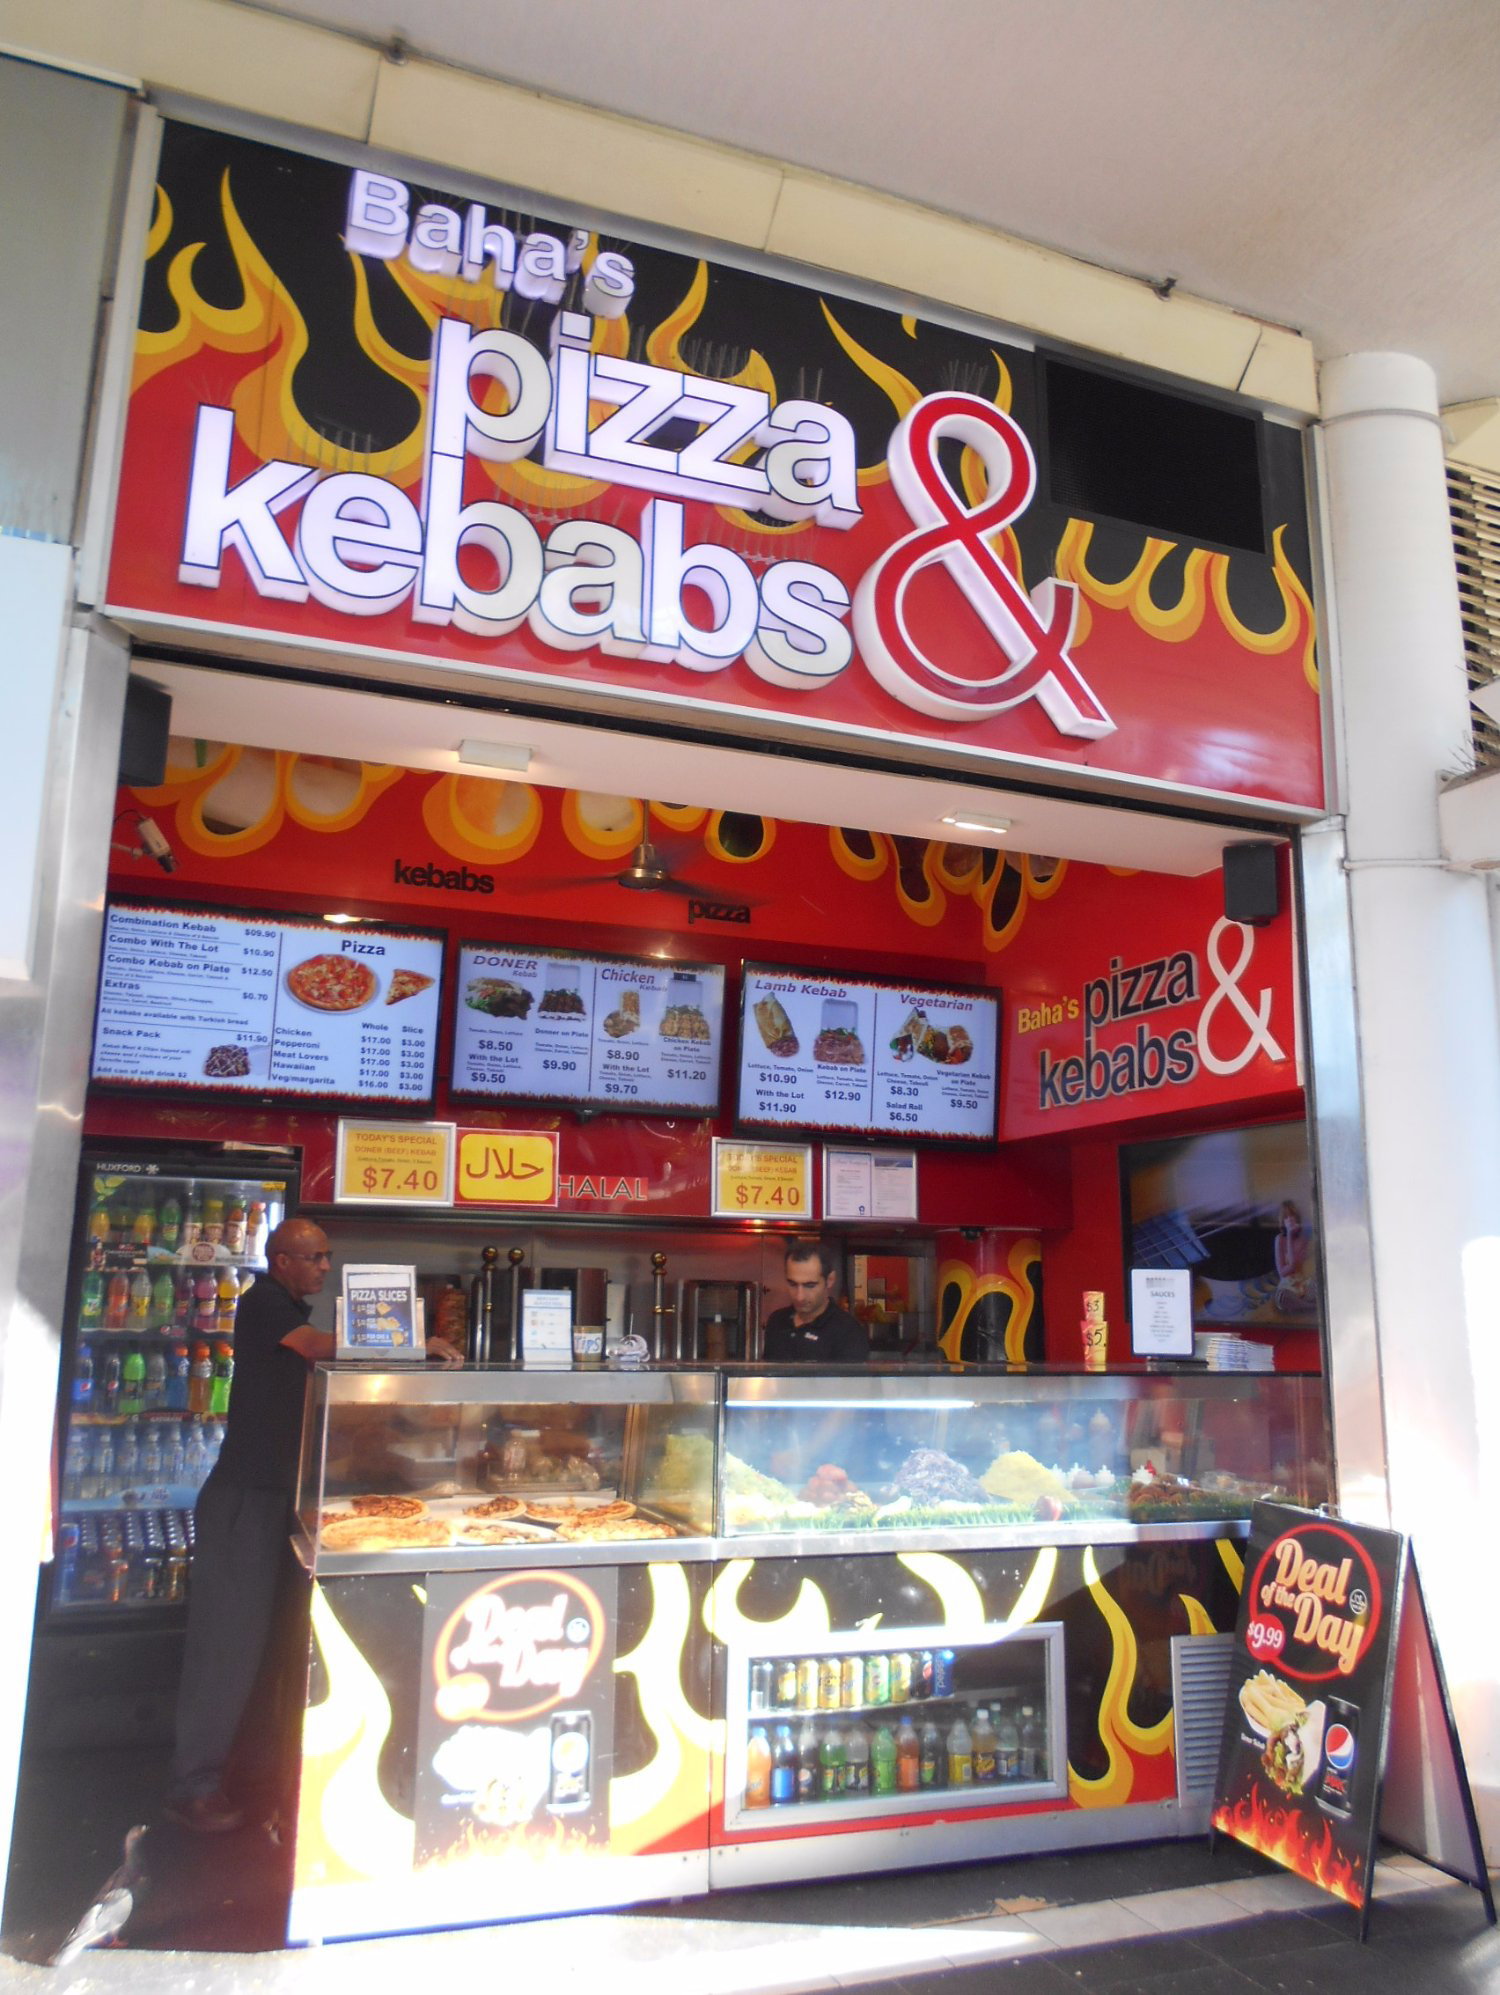 Baha's Pizza And Kebab - thumb 1